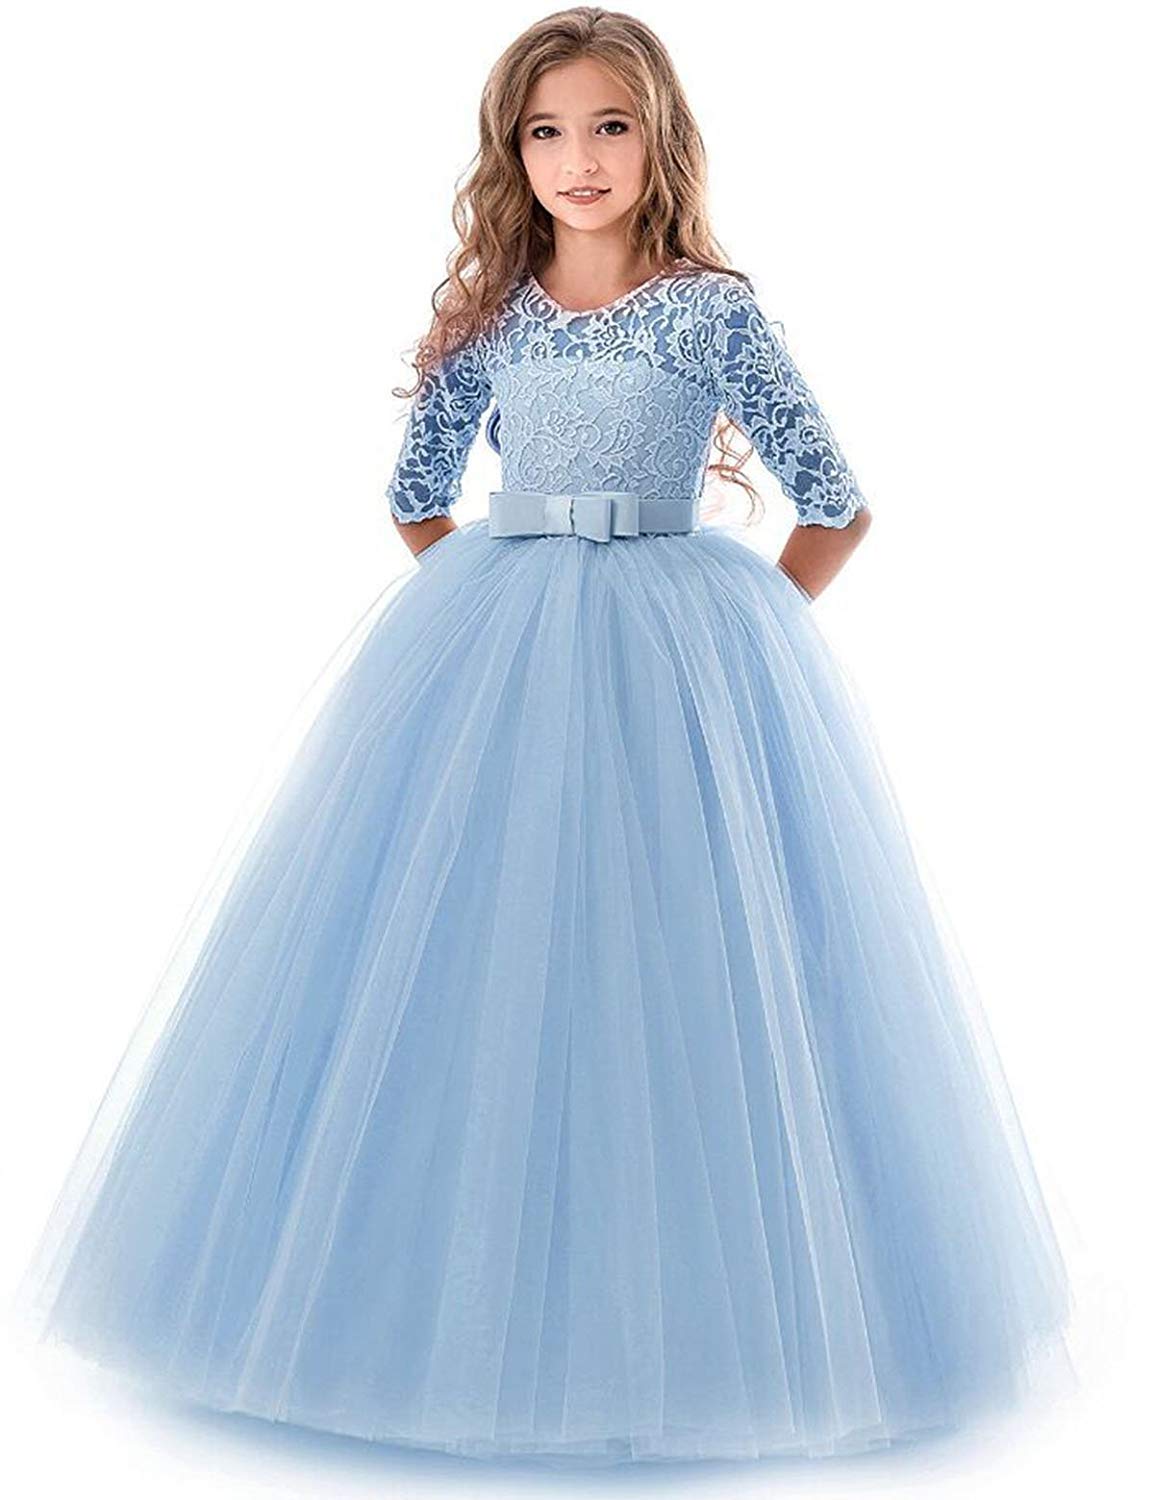 IBTOM CASTLE Blumensmädchenkleid Prinzessin Festliches Kinder Mädchen Kleid Festzug Kleider Hochzeit Partykleid Blau 13-14 Jahre